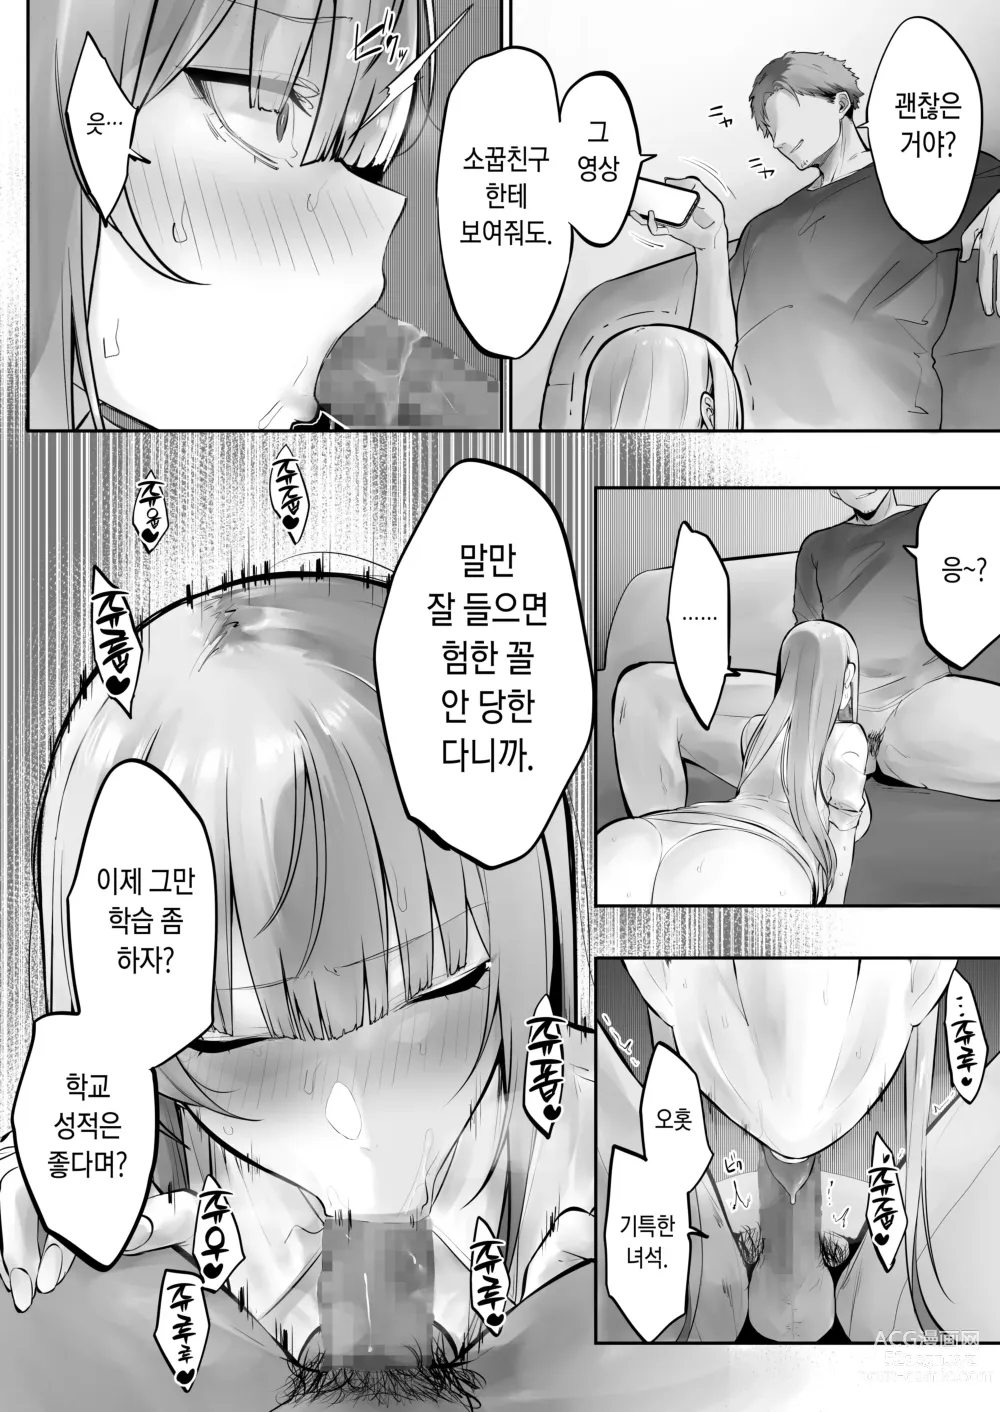 Page 9 of doujinshi Ani ni Netorare Ochita Tsubaki｜양오빠에게 빼앗겨 타락한 츠바키